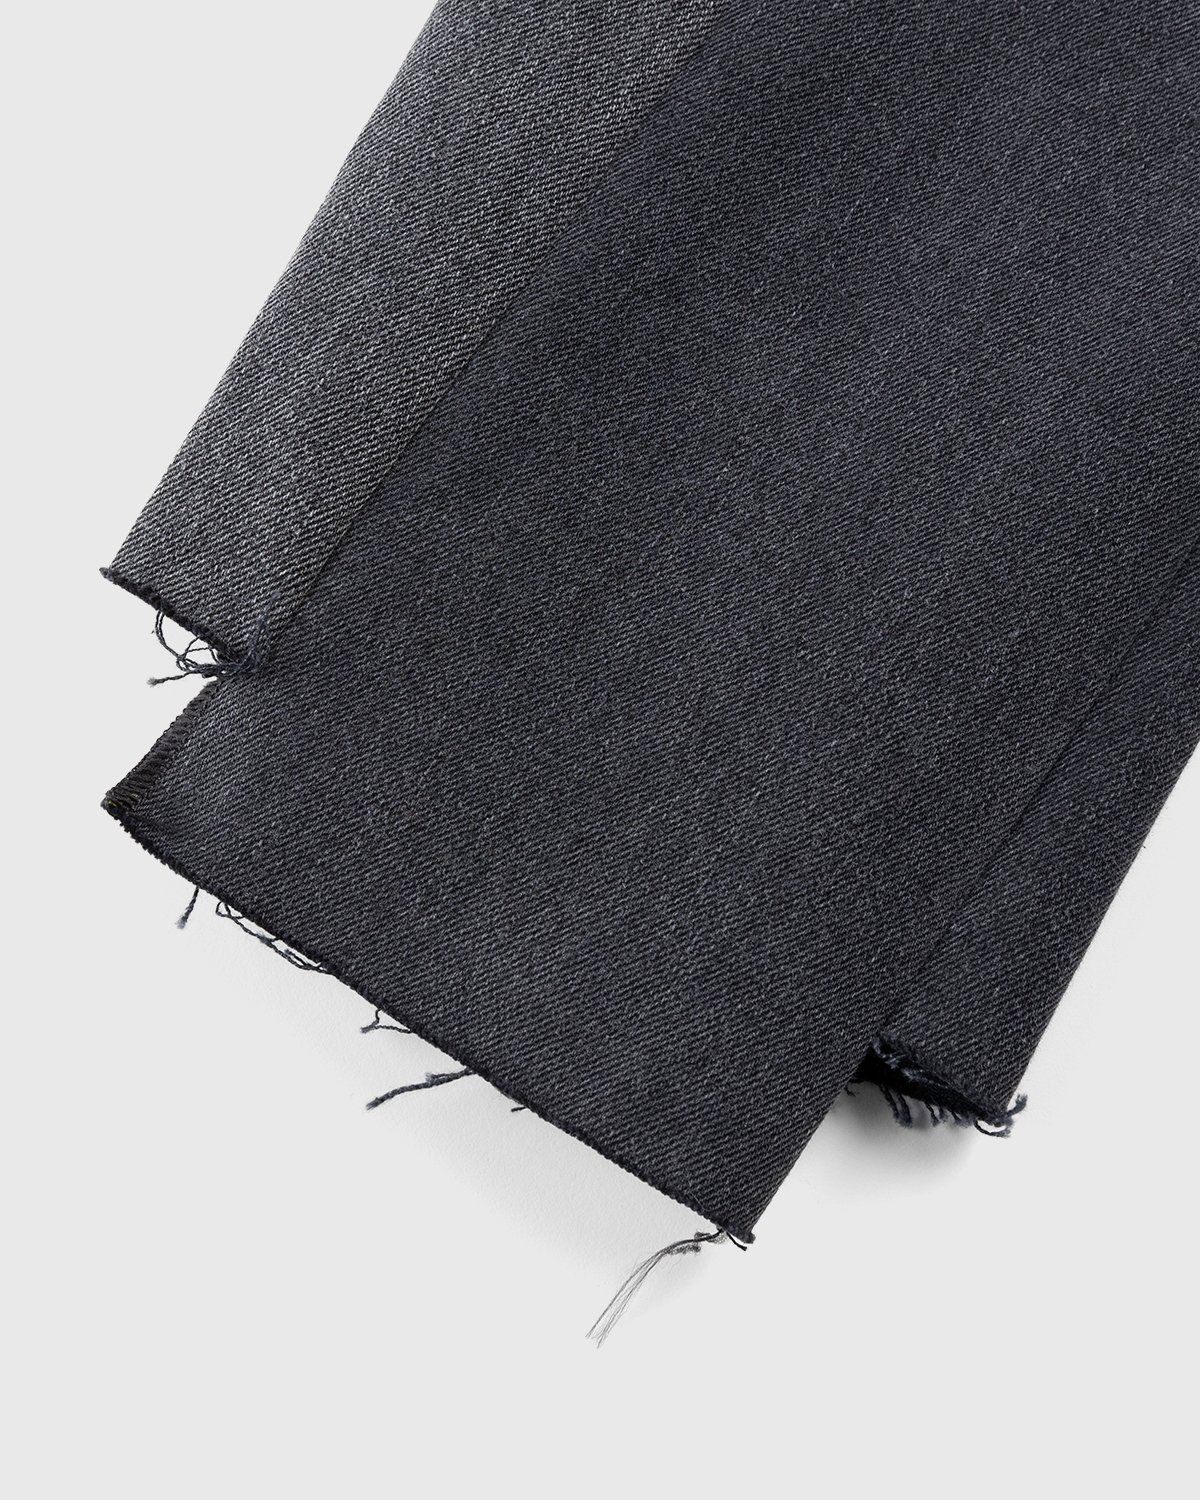 Maison Margiela – Spliced Jeans Black - Pants - Black - Image 4